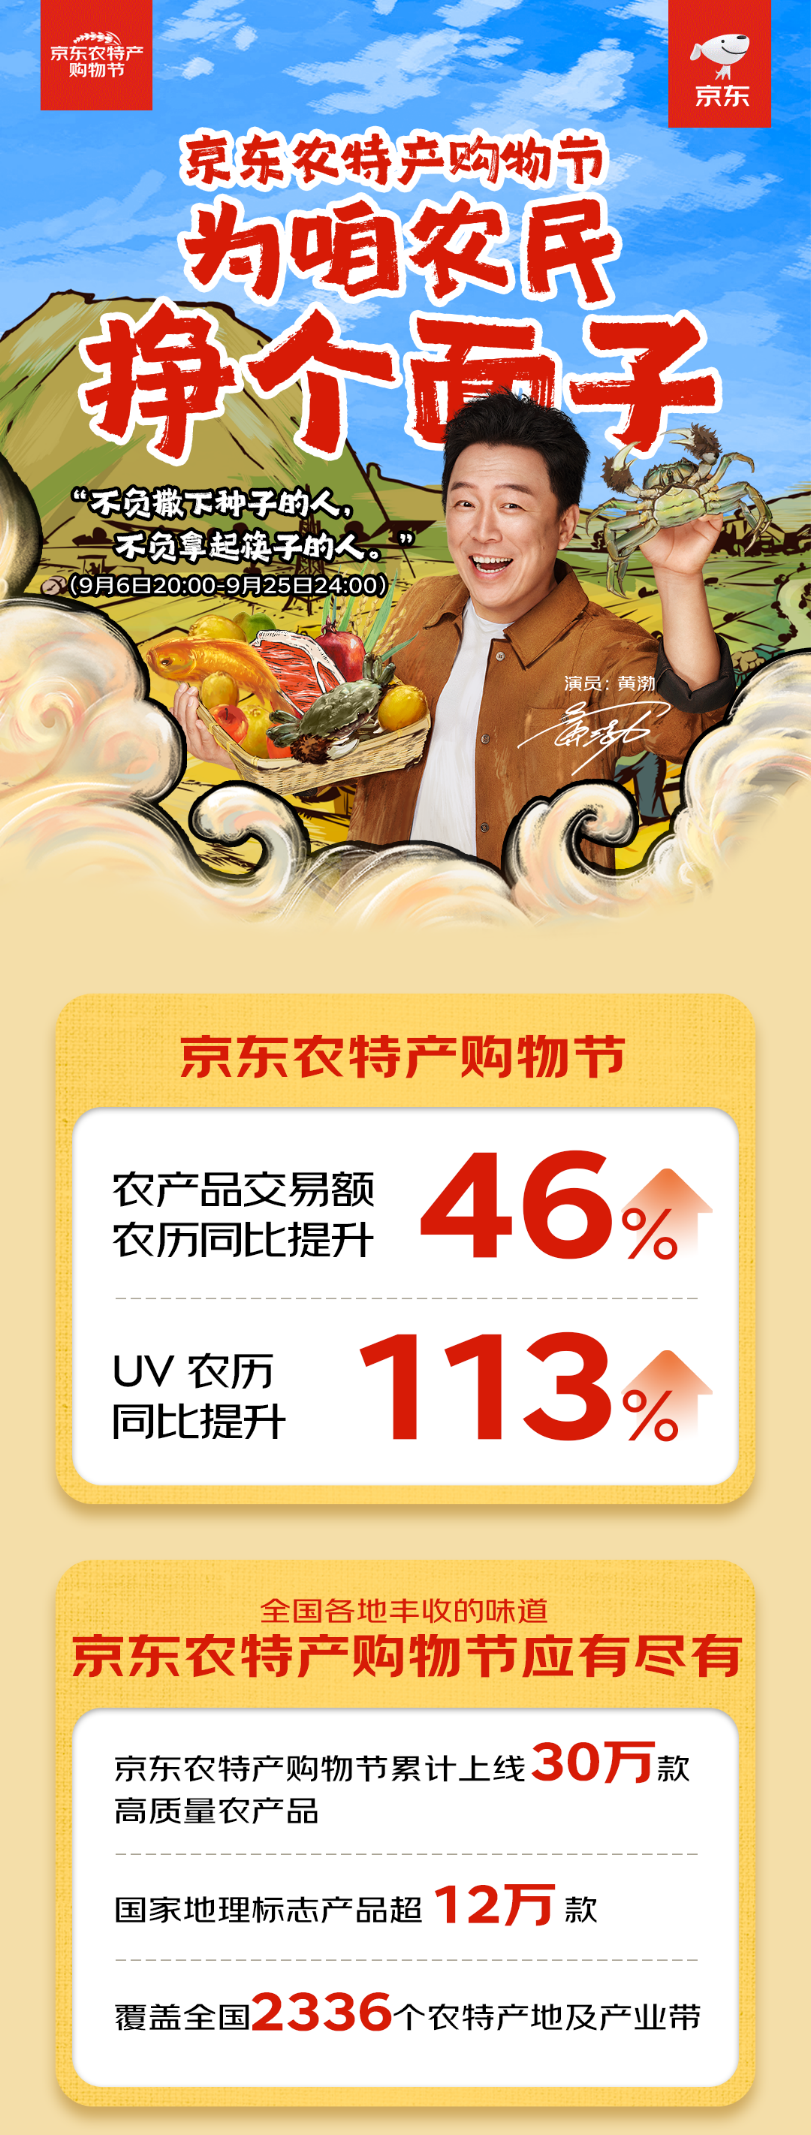 “首届“京东农特产购物节”战报发布：农产品交易额农历同比提升46%